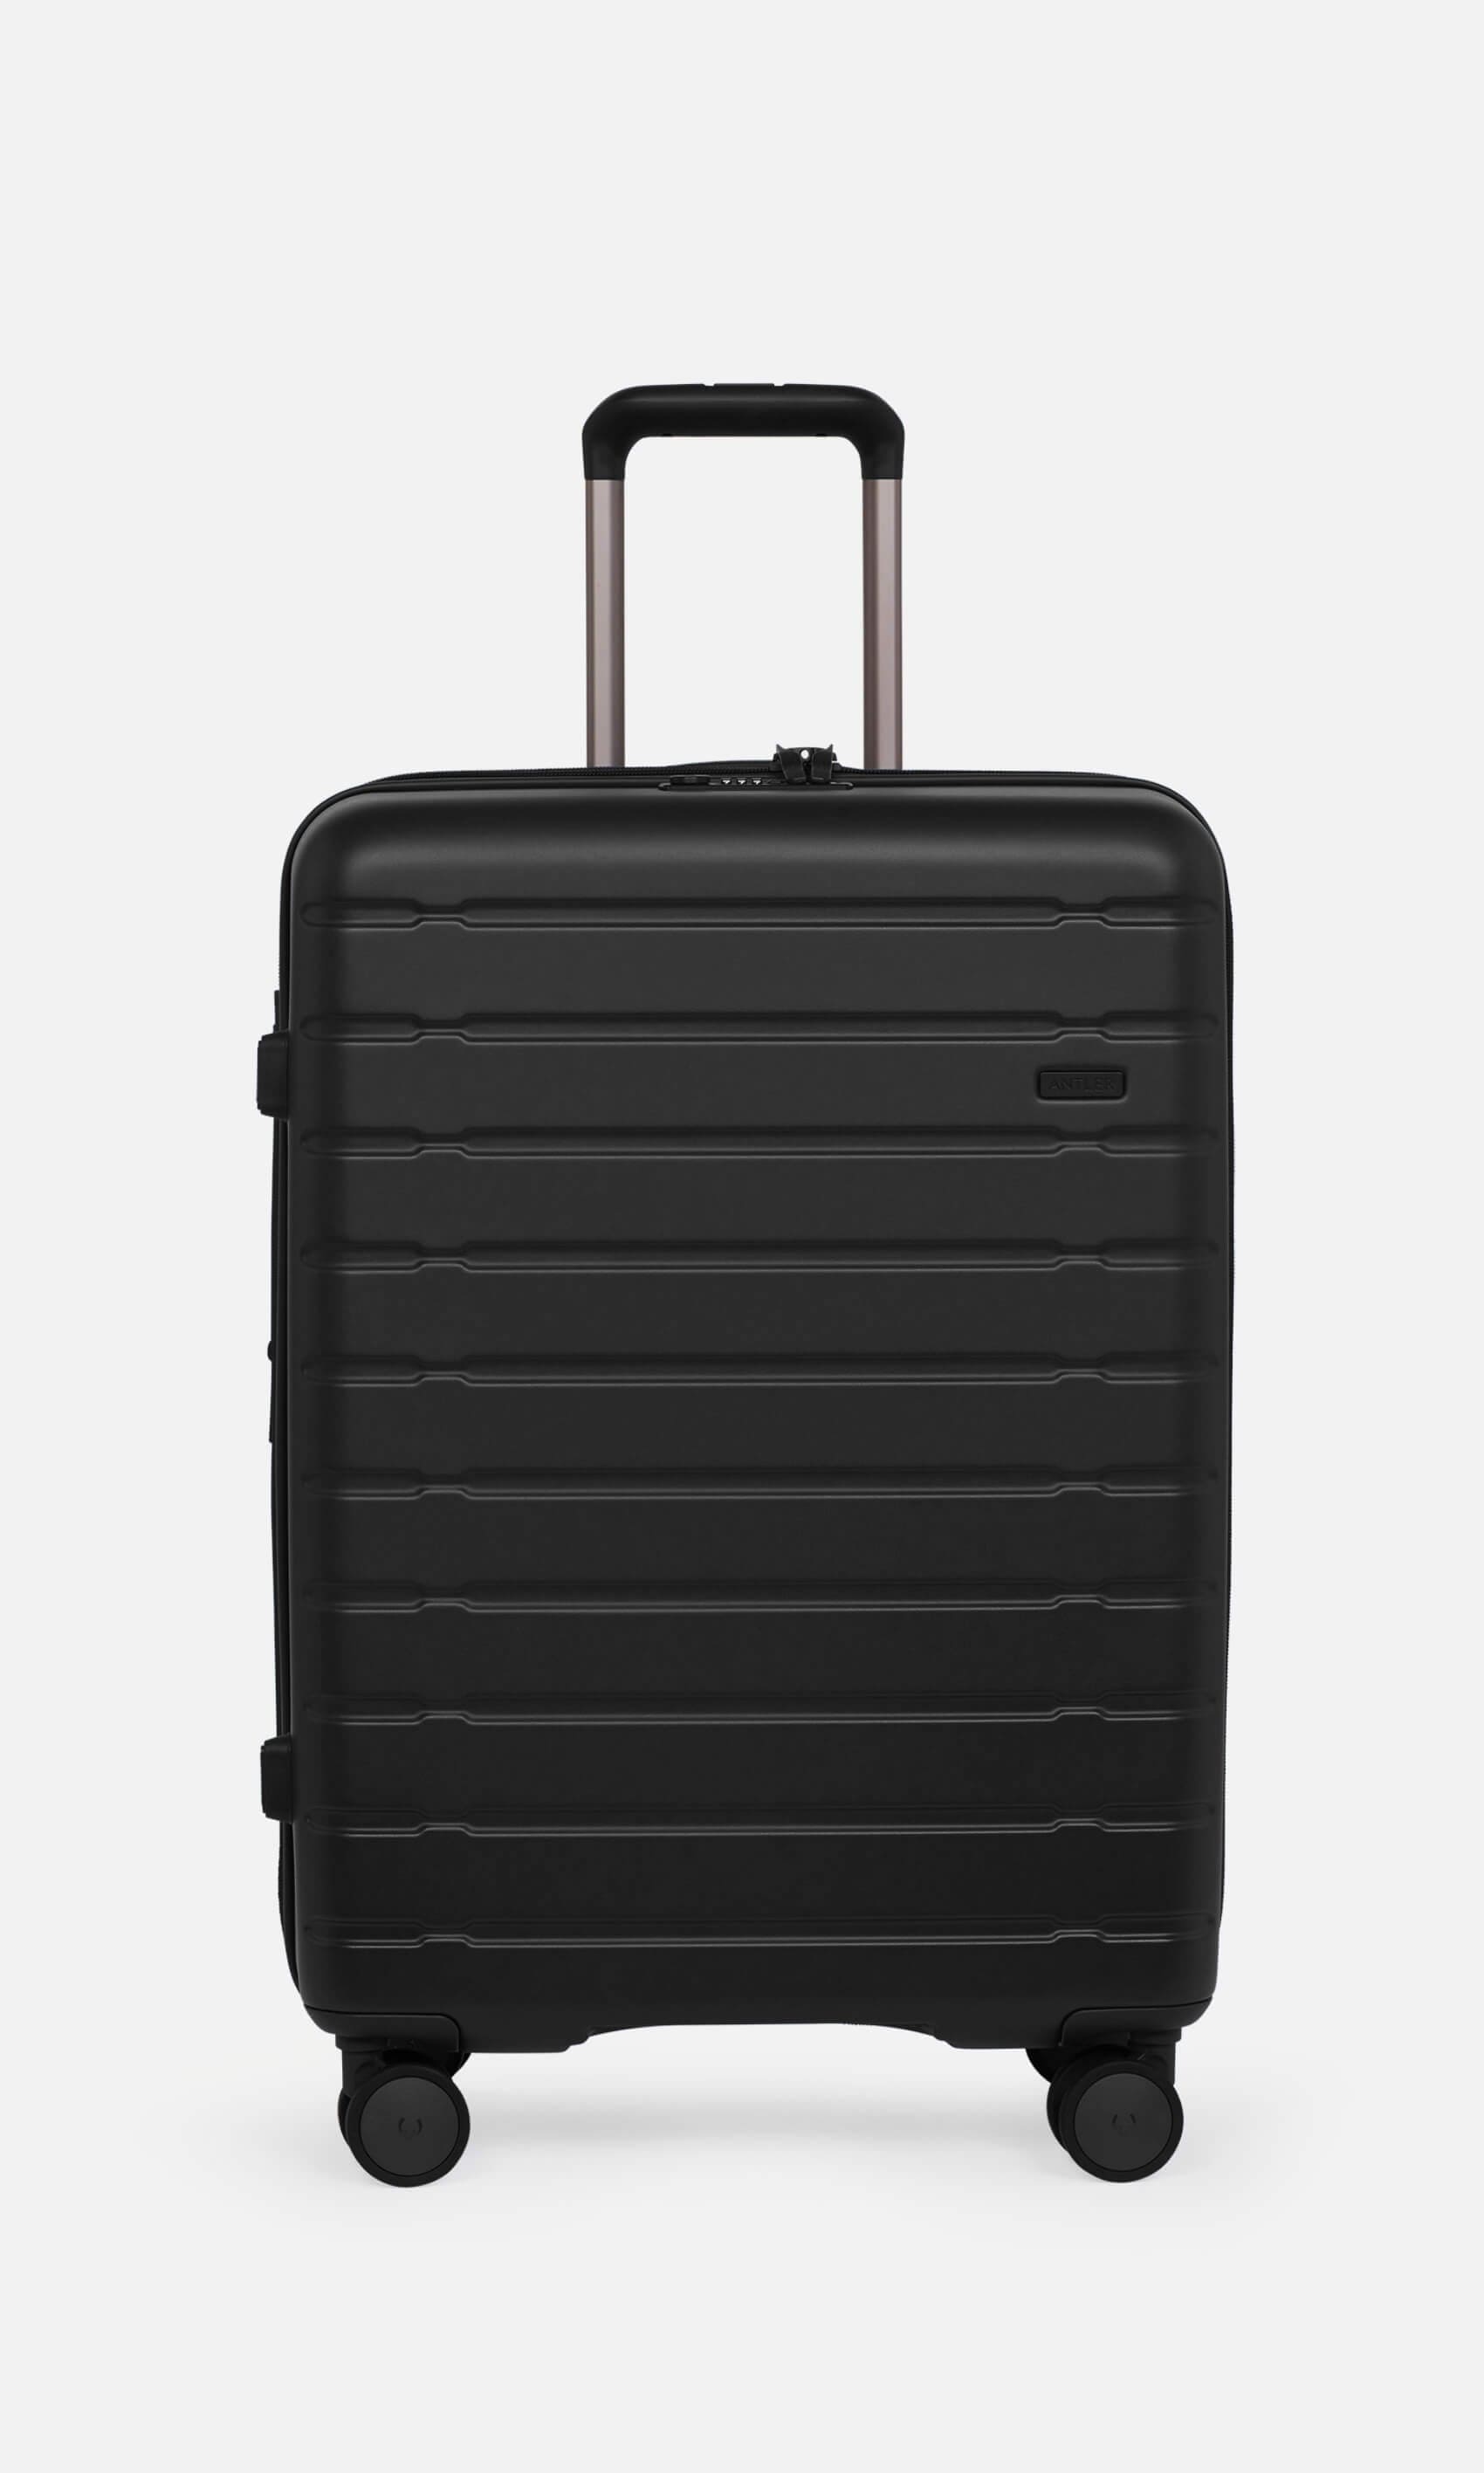 Antler Luggage -  Stamford set in midnight black - Hard Suitcases Stamford Set of 3 Suitcases Black | Hard Luggage | Antler UK